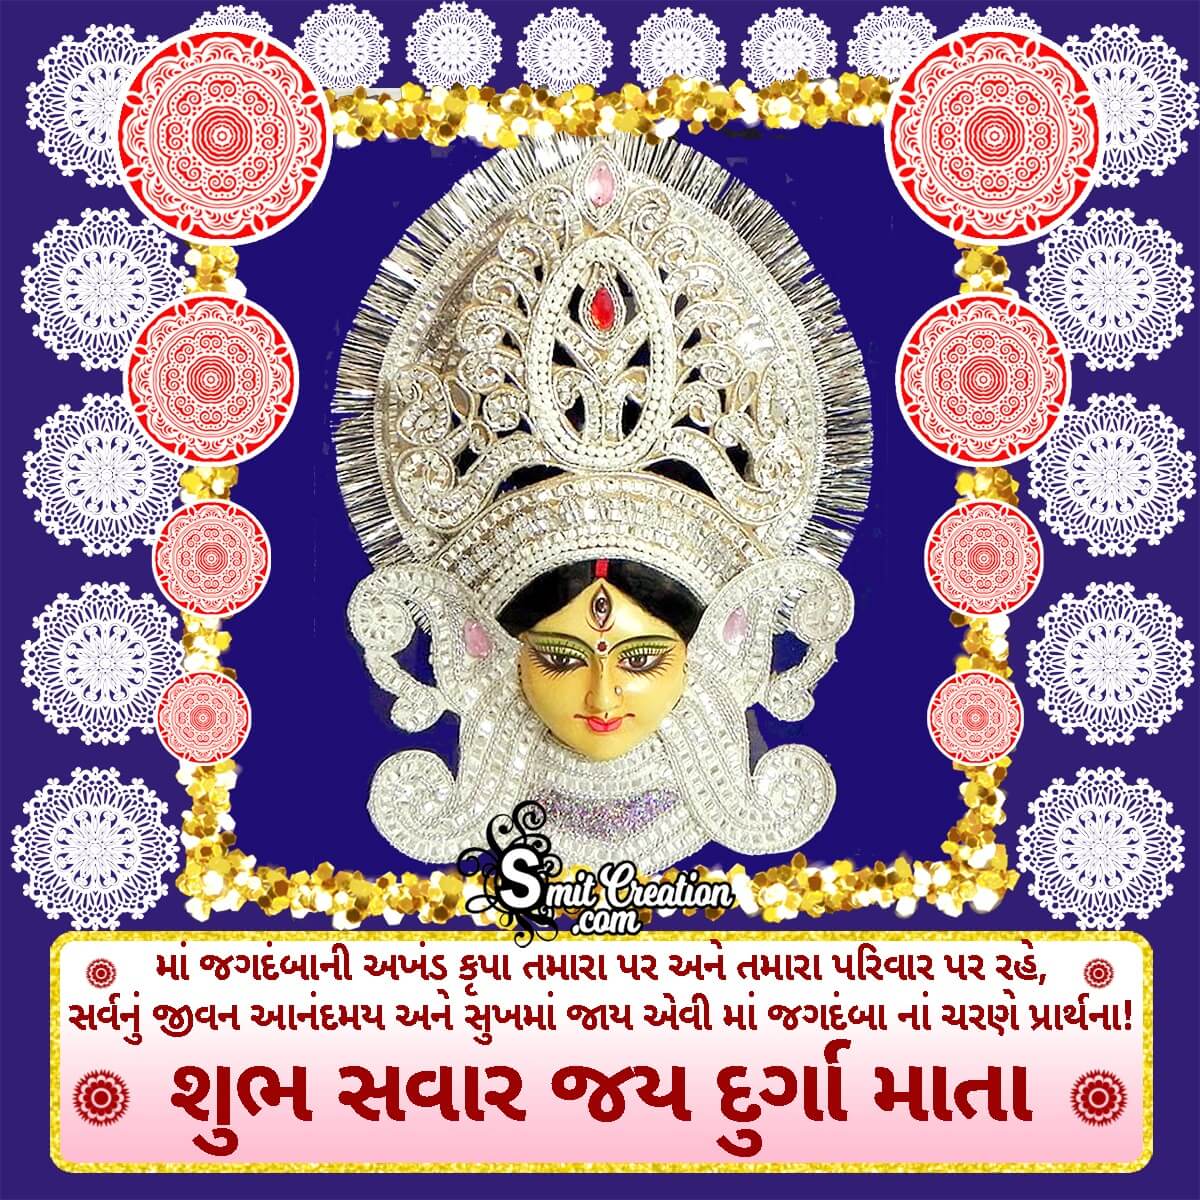 Shubh Savar Jai Durga Mata